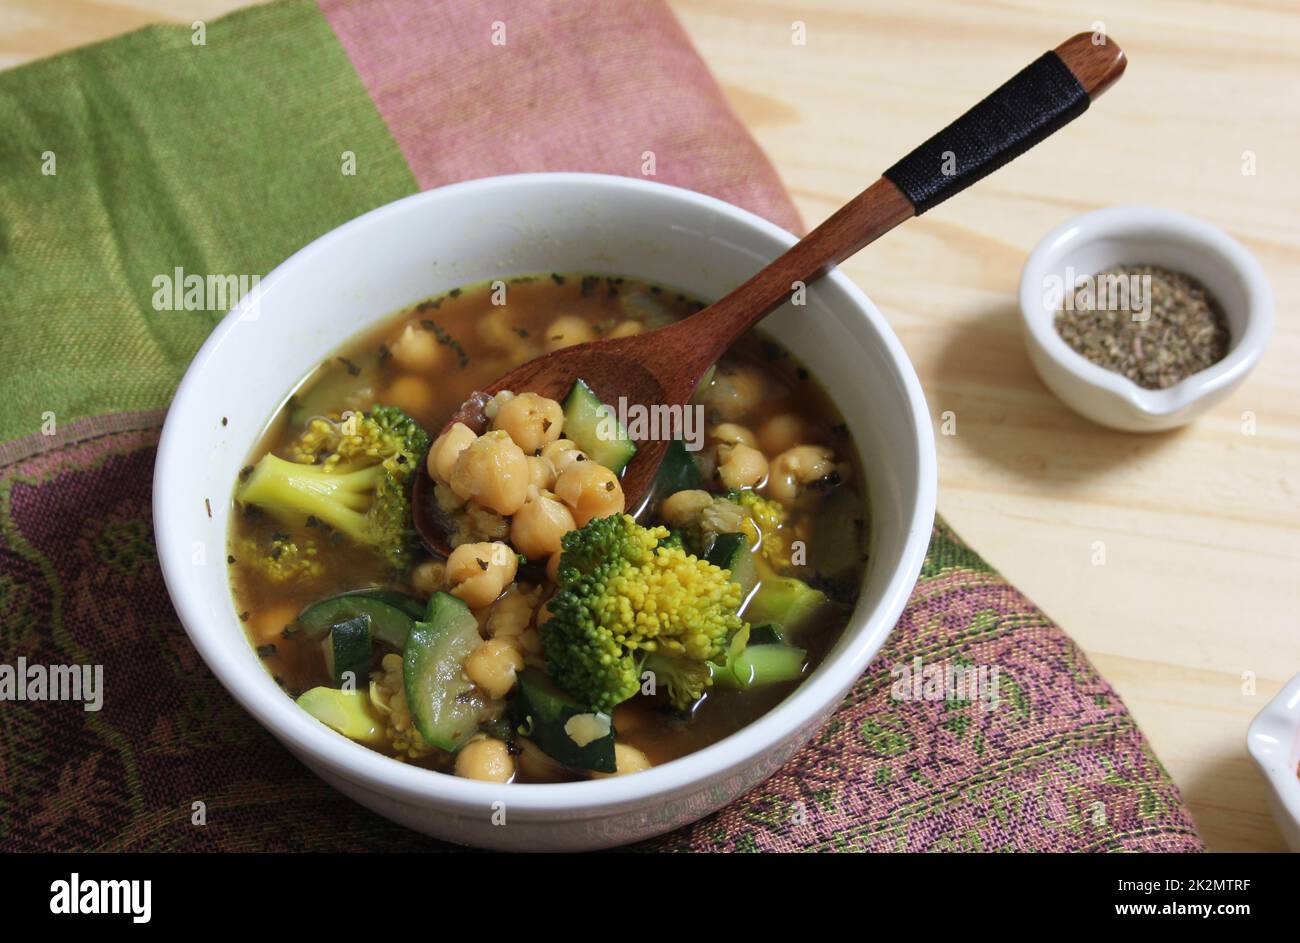 Nahaufnahme der Suppenschüssel mit Garbanzo-Bohnen, Brokkoli und Zucchini Stockfoto